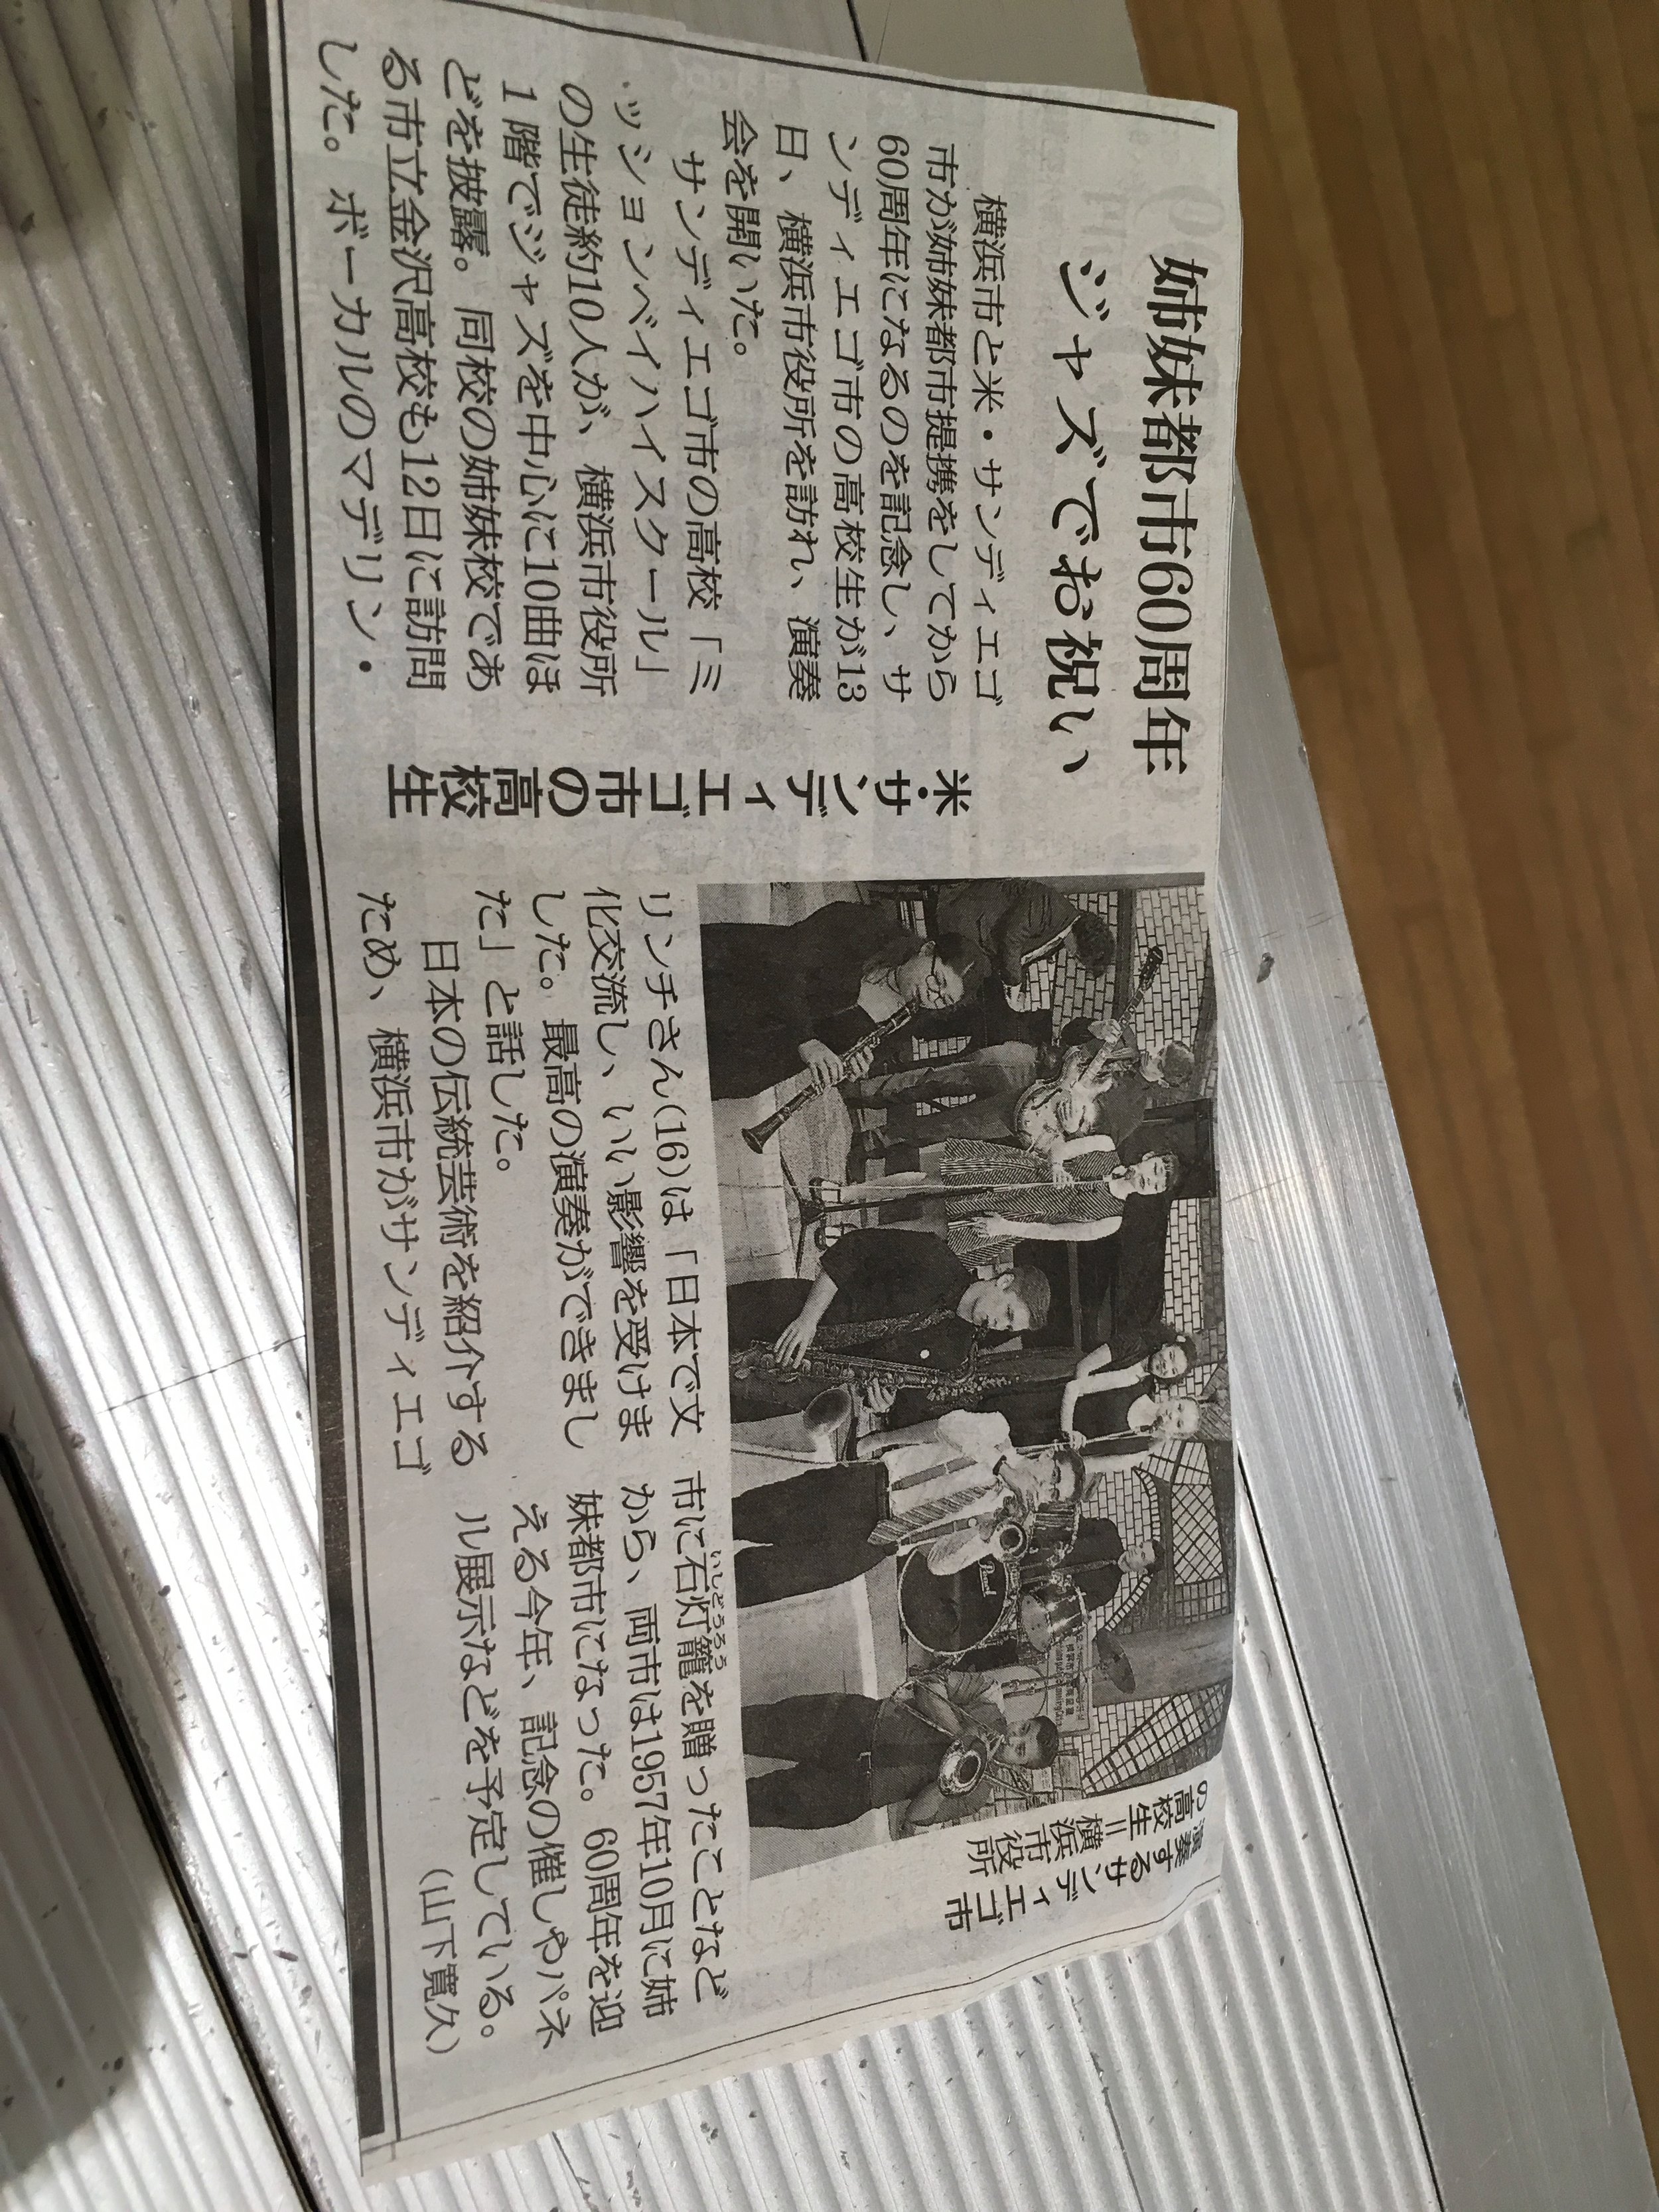 We made the Yokohama news!